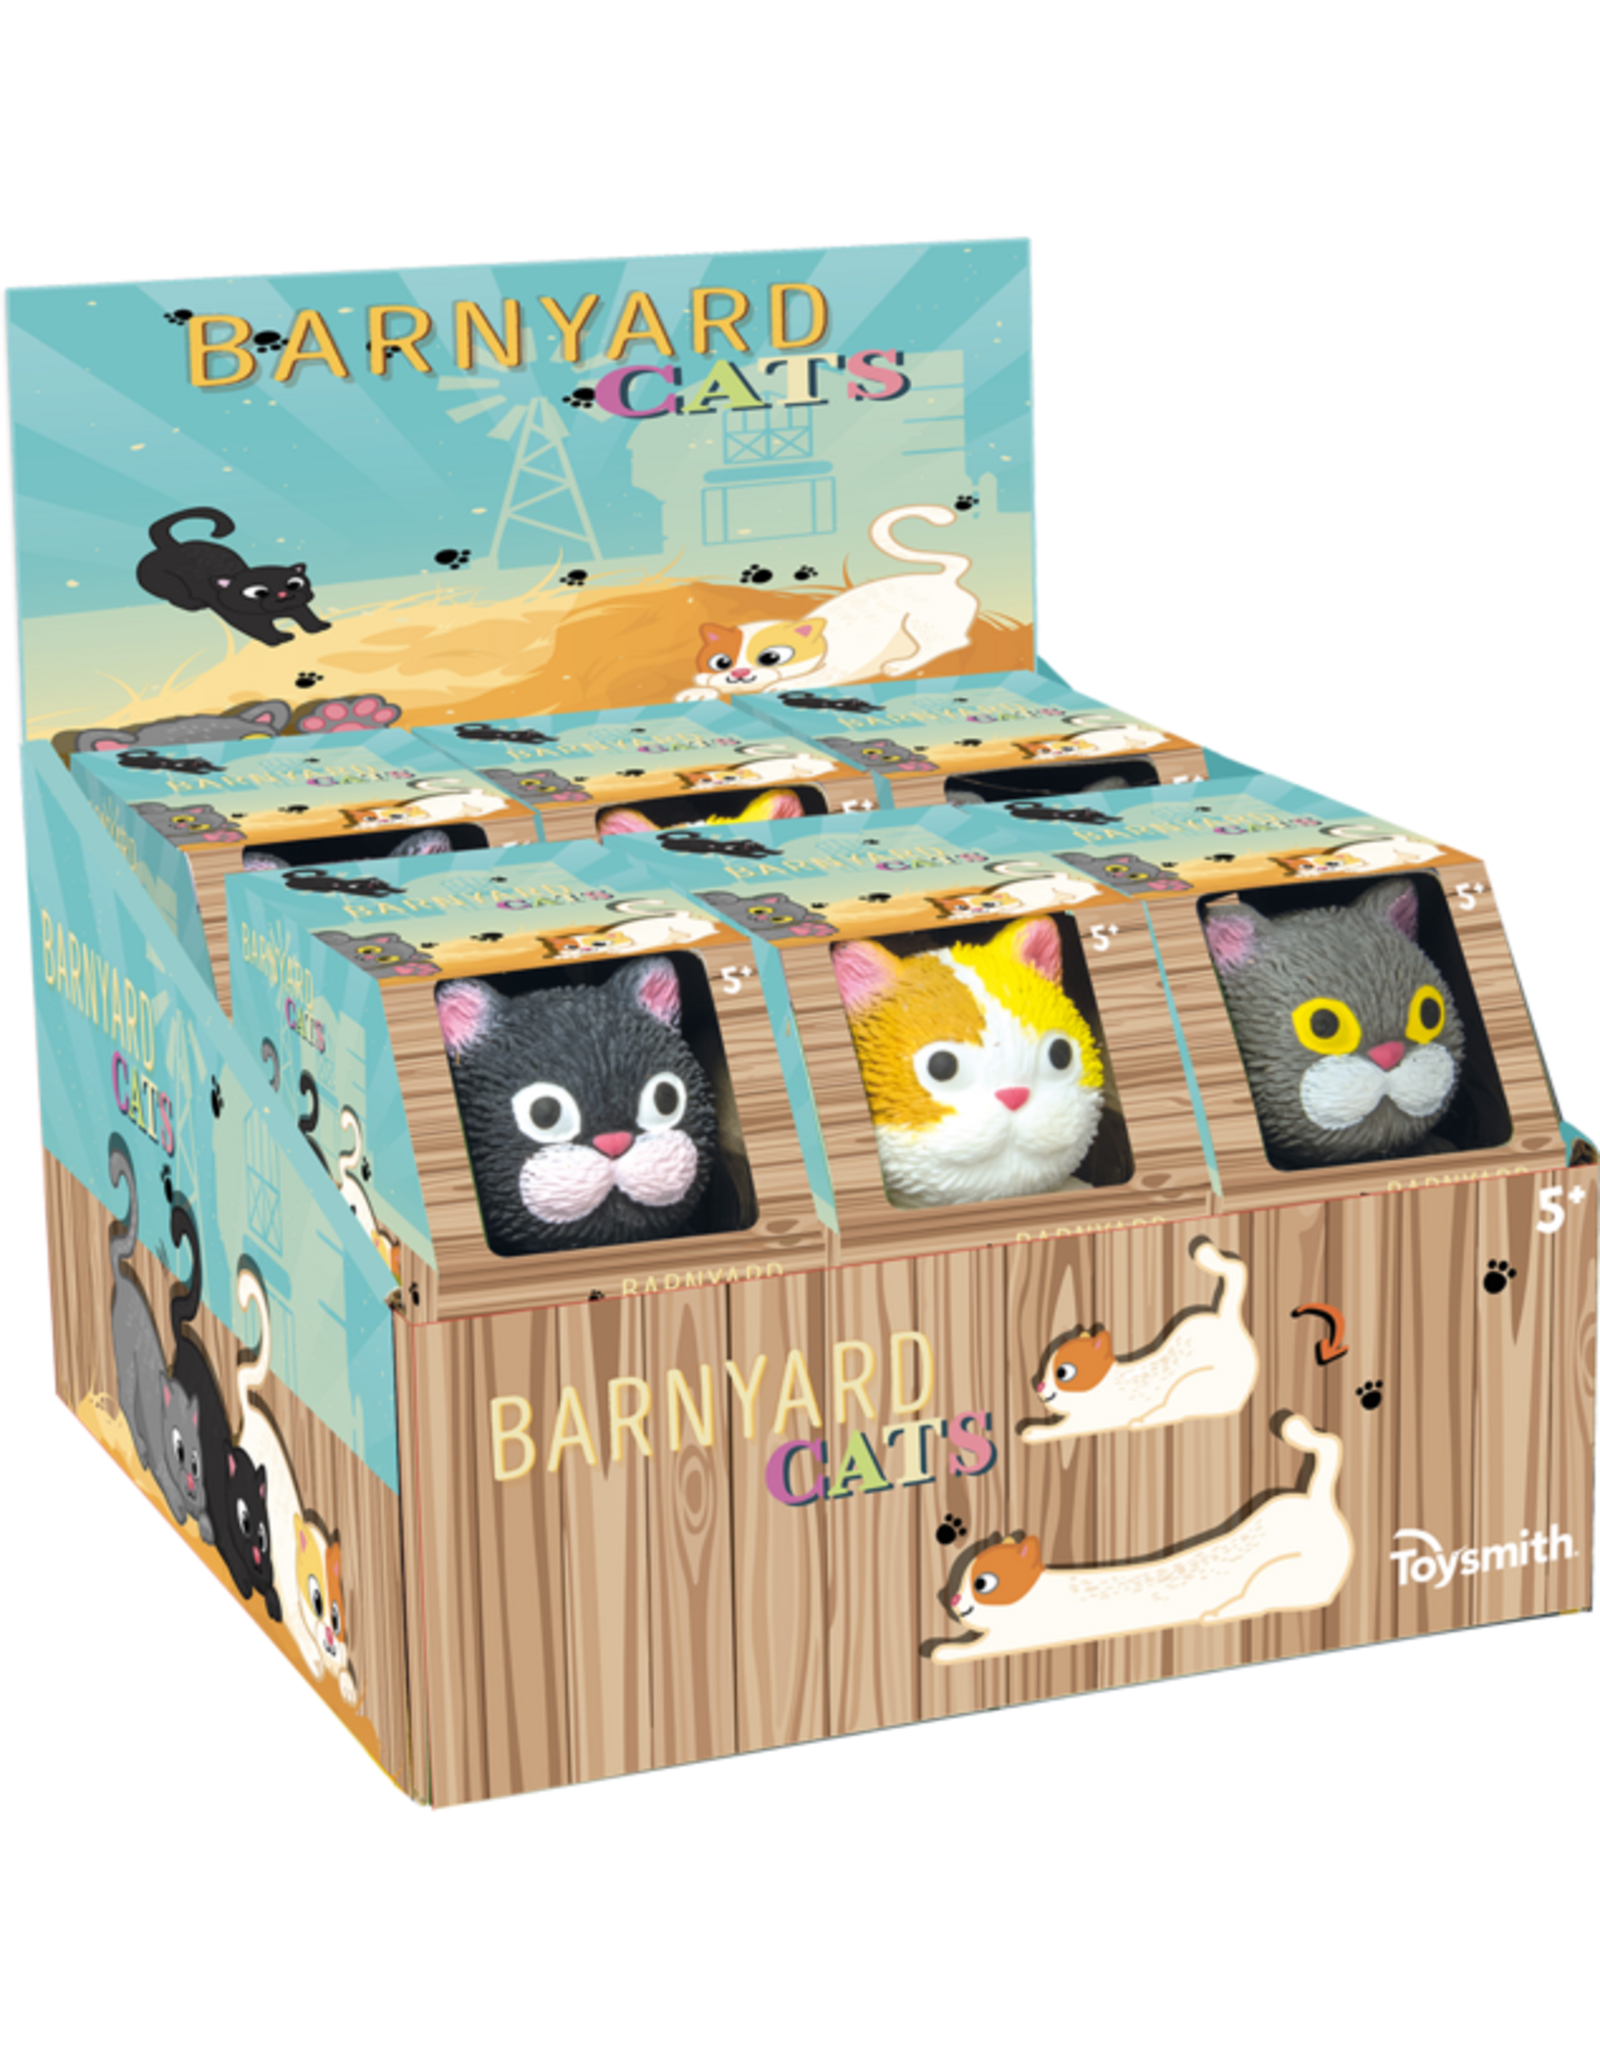 Barnyard Cats